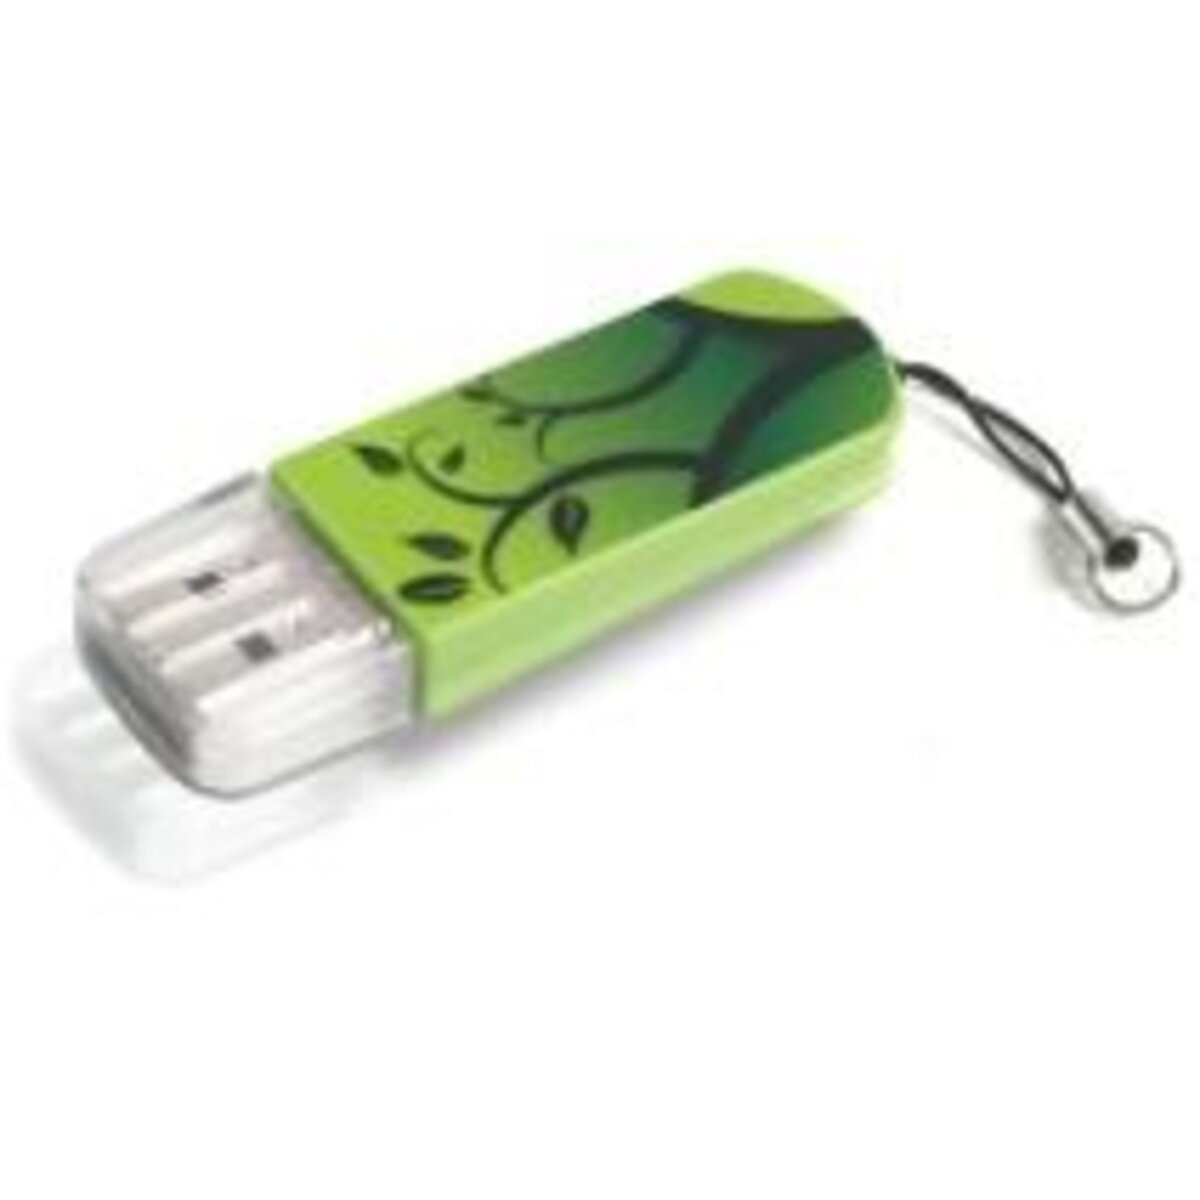 VERBATIM Mini USB 2.0 Drive 8GB - Elements Edition - Vert